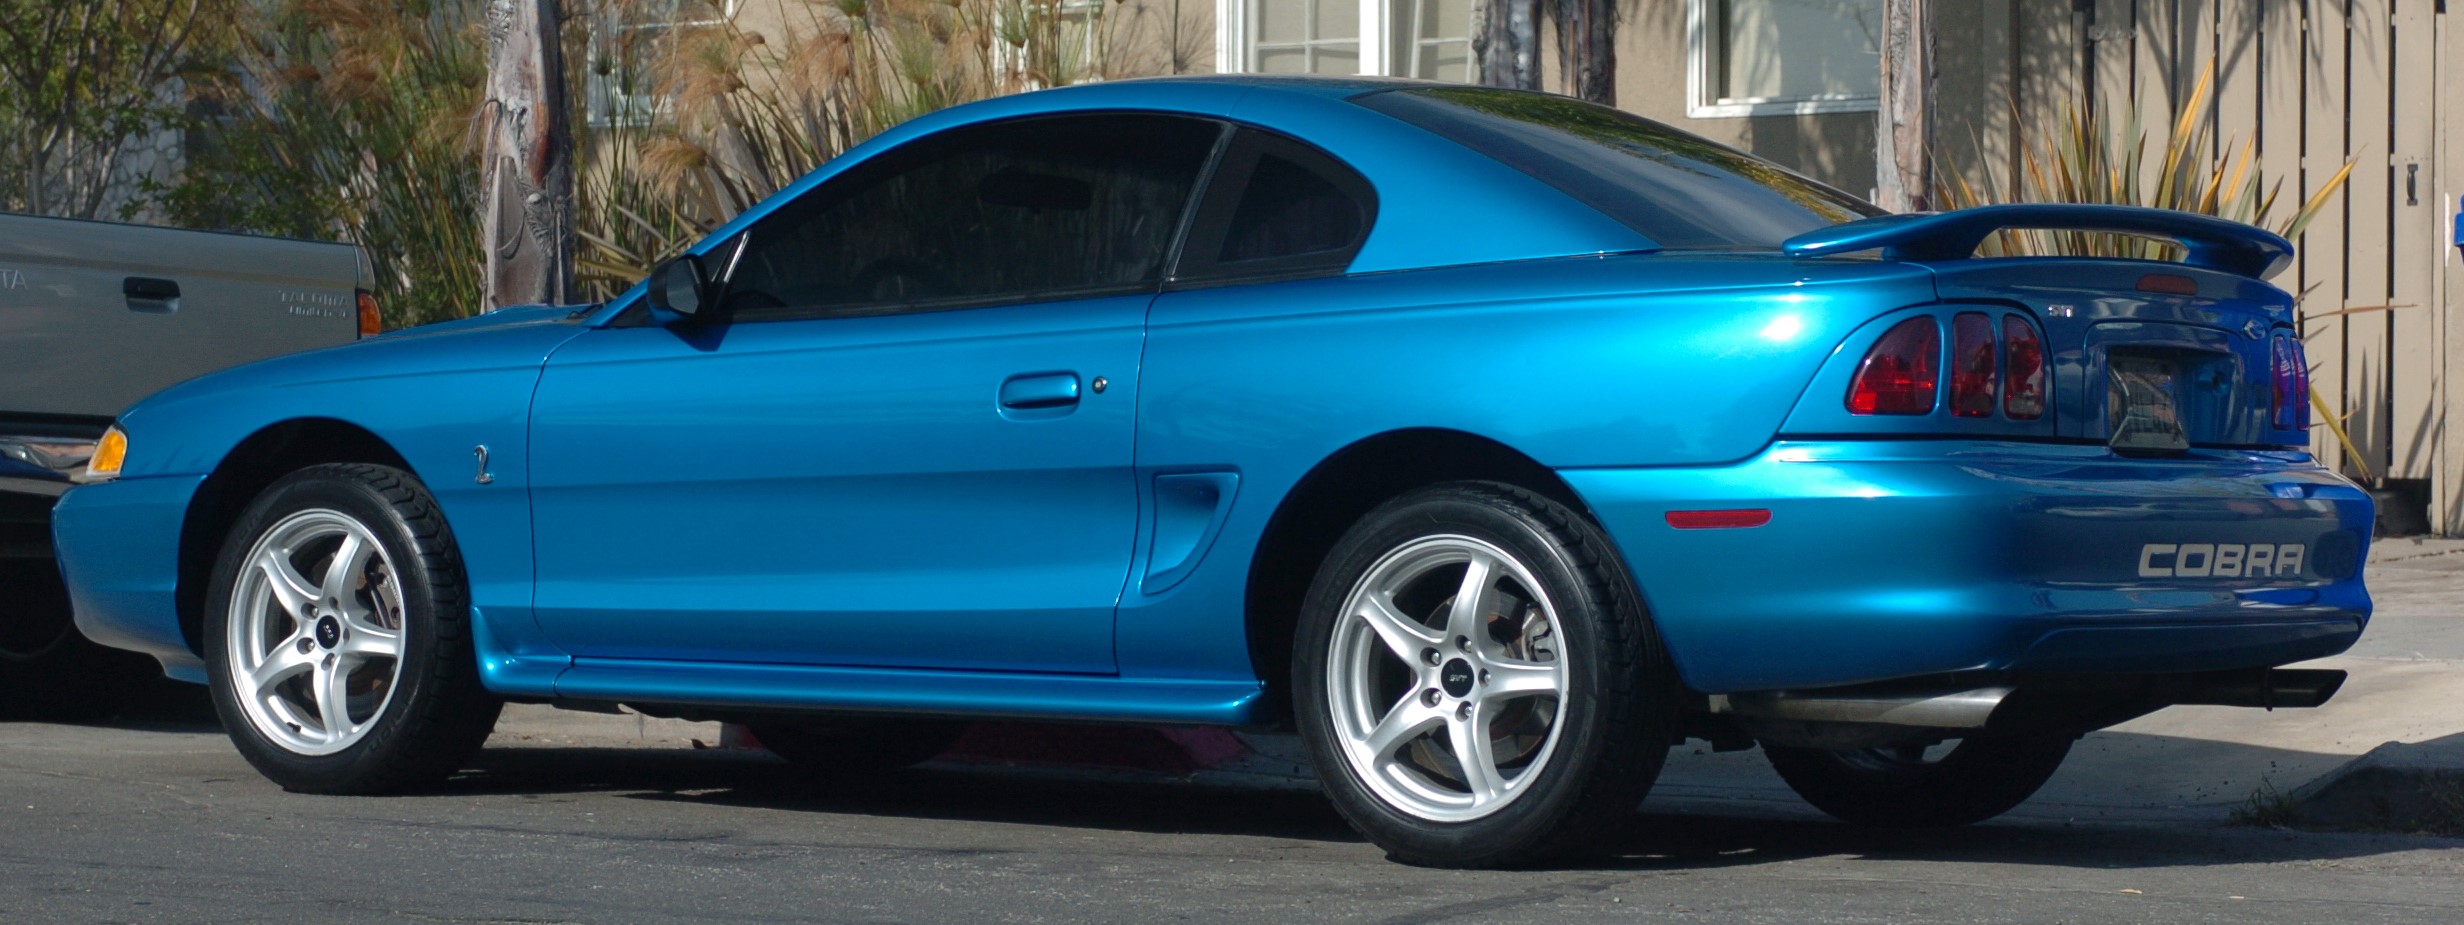 Best SN95 Mustang Colors | 1994-04 - Best SN95 Mustang Colors | 1994-04